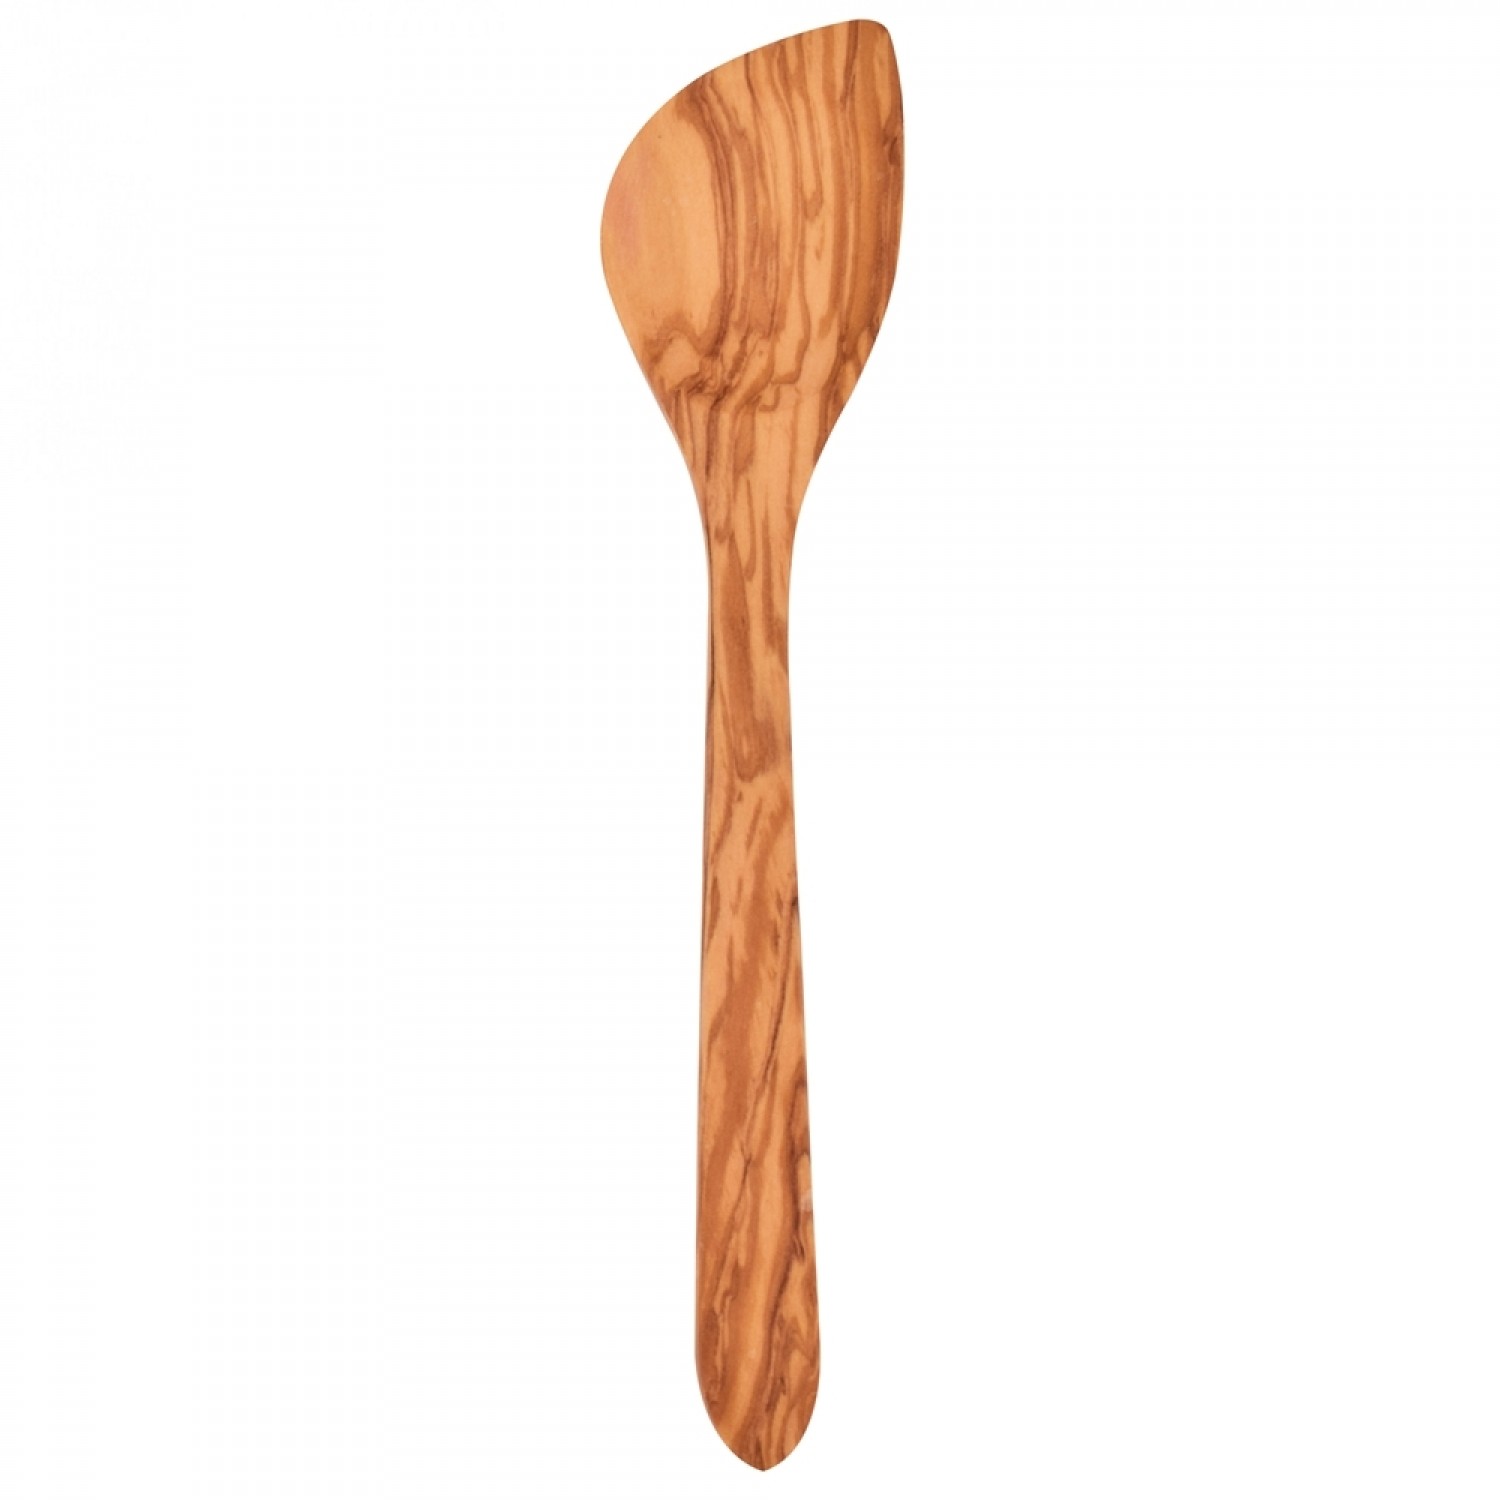 Biodora Olive Wood Pointed Cooking Spoon